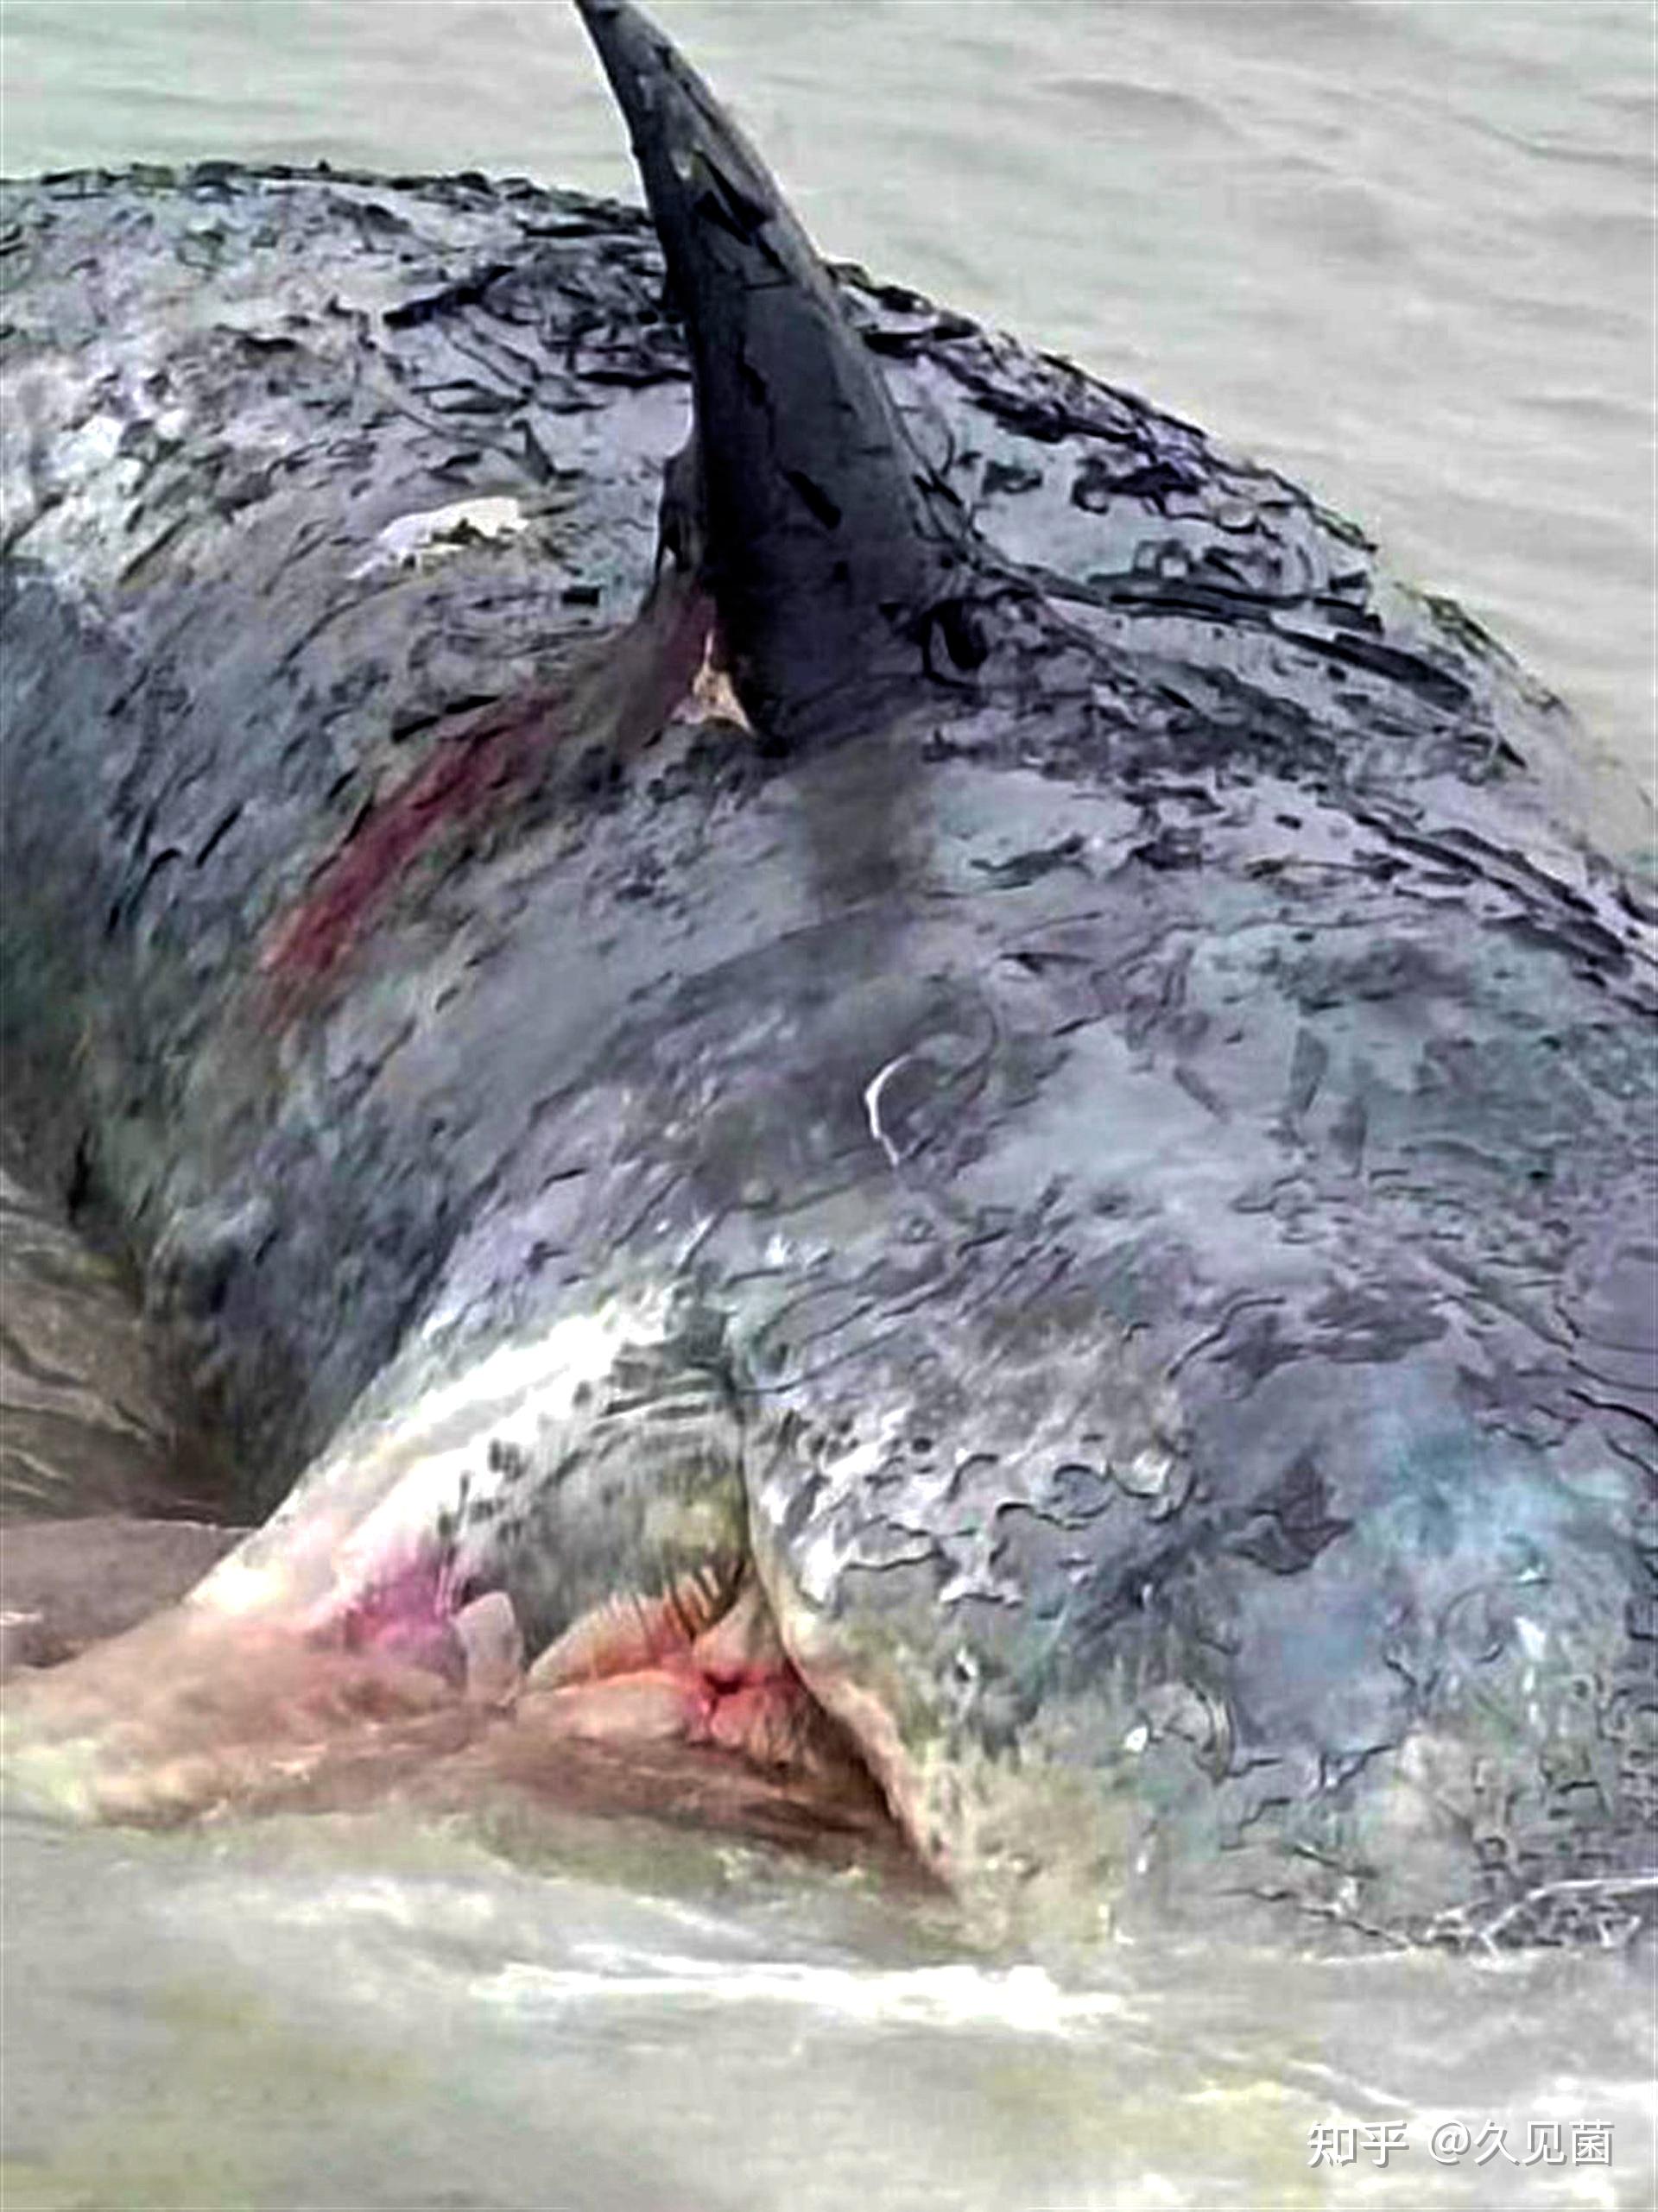 鲸爆正在倒计时宁波海现滩搁浅抹香鲸尸体鲸爆该如何阻止